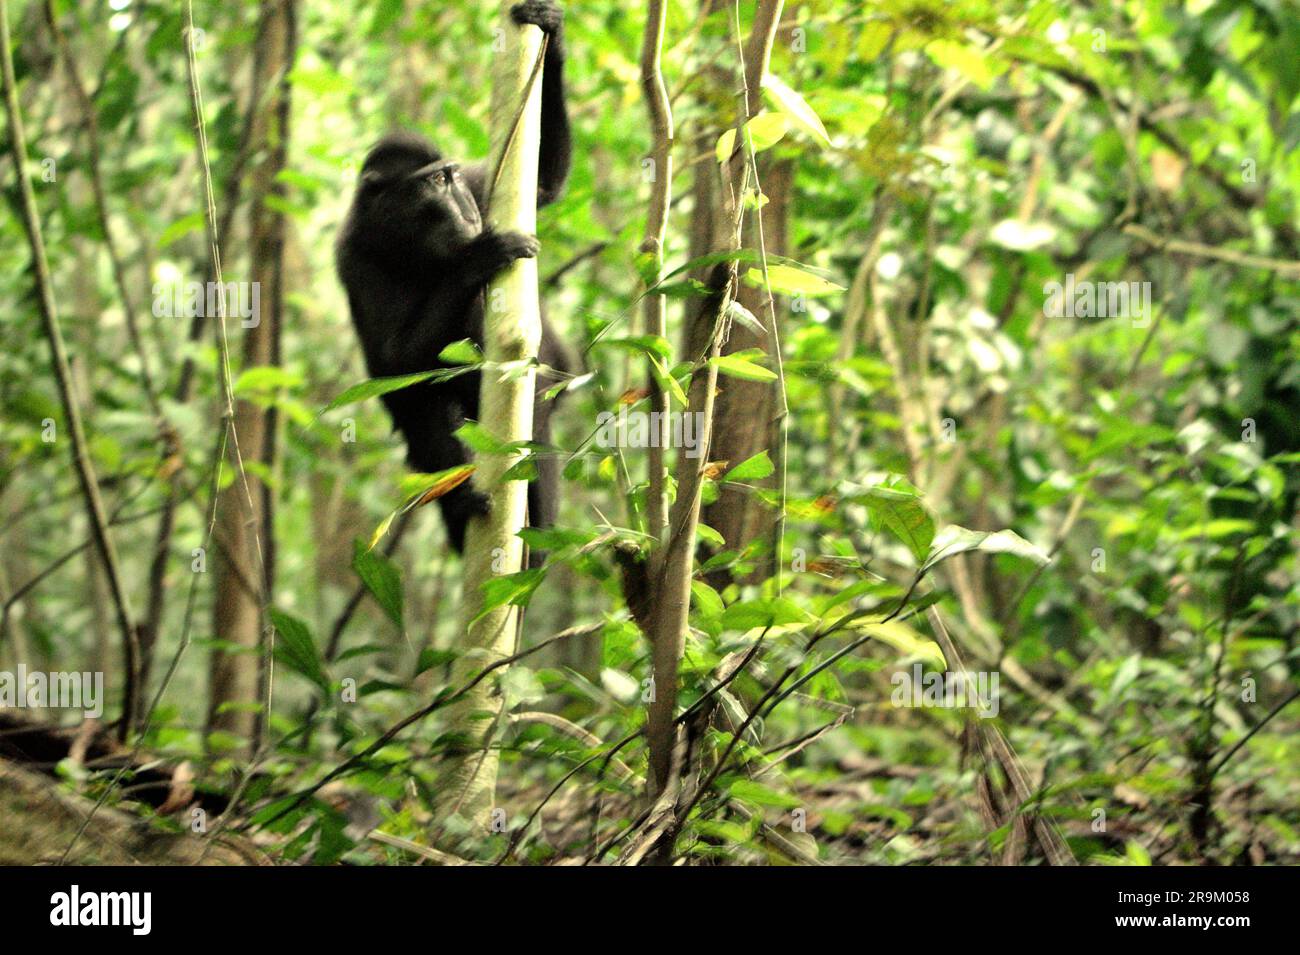 Ein junger Makak (Macaca nigra) klettert auf einen Baum, während er im Tieflandwald des Naturschutzgebiets Tangkoko, North Sulawesi, Indonesien, forscht. Der Klimawandel könne allmählich das Verhalten und den Fortpflanzungszyklus dieser bedrohten Art verändern und gleichzeitig ihre Lebensraumtauglichkeit verringern, was sie zwingen könnte, sichere Lebensräume zu verlassen und potenziellen Konflikten mit Menschen ausgesetzt zu sein, sagen Wissenschaftler. Ohne die Erwärmung haben die Primaten bereits unter dem zunehmenden anthropogenen Druck gelitten, wodurch sie eine abnehmende Population haben und in das Aussterberisiko geraten. Stockfoto